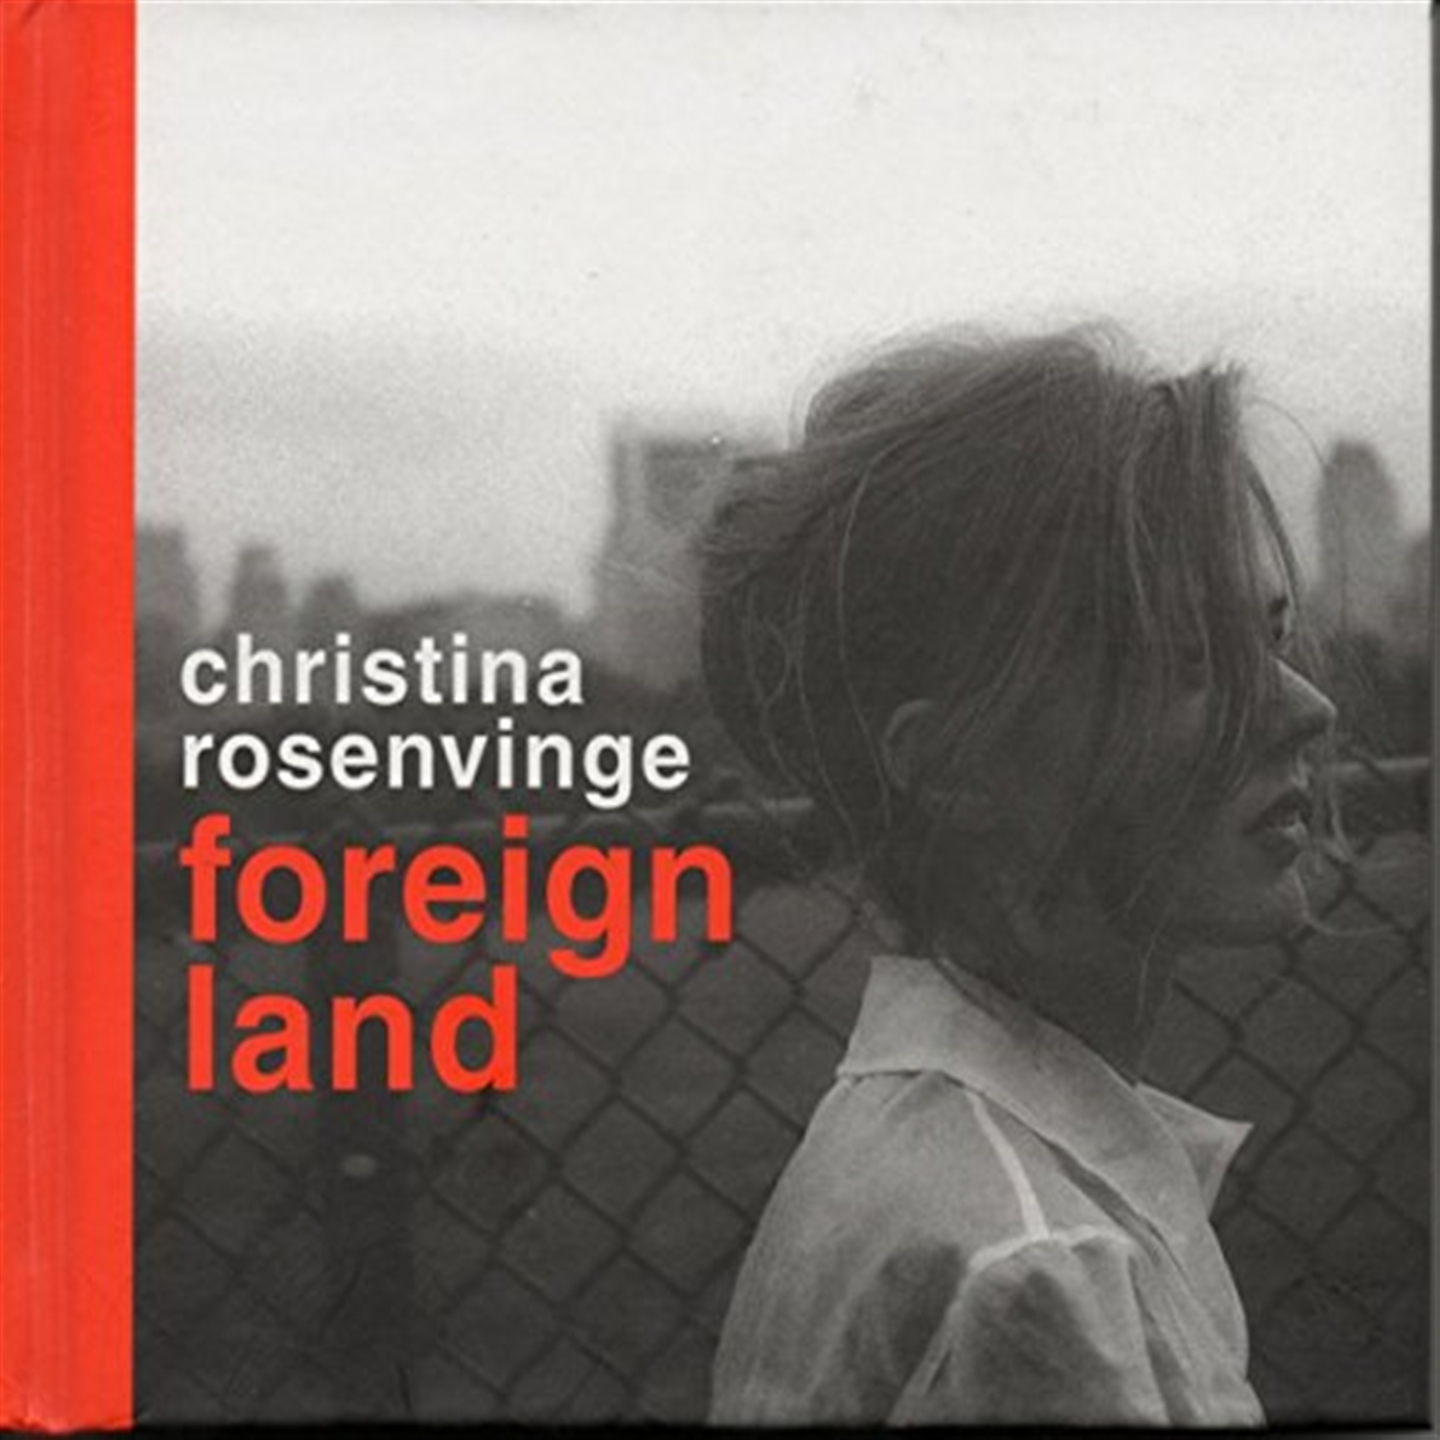 Rosenvinge Christina - Foreign Land - 第 1/1 張圖片